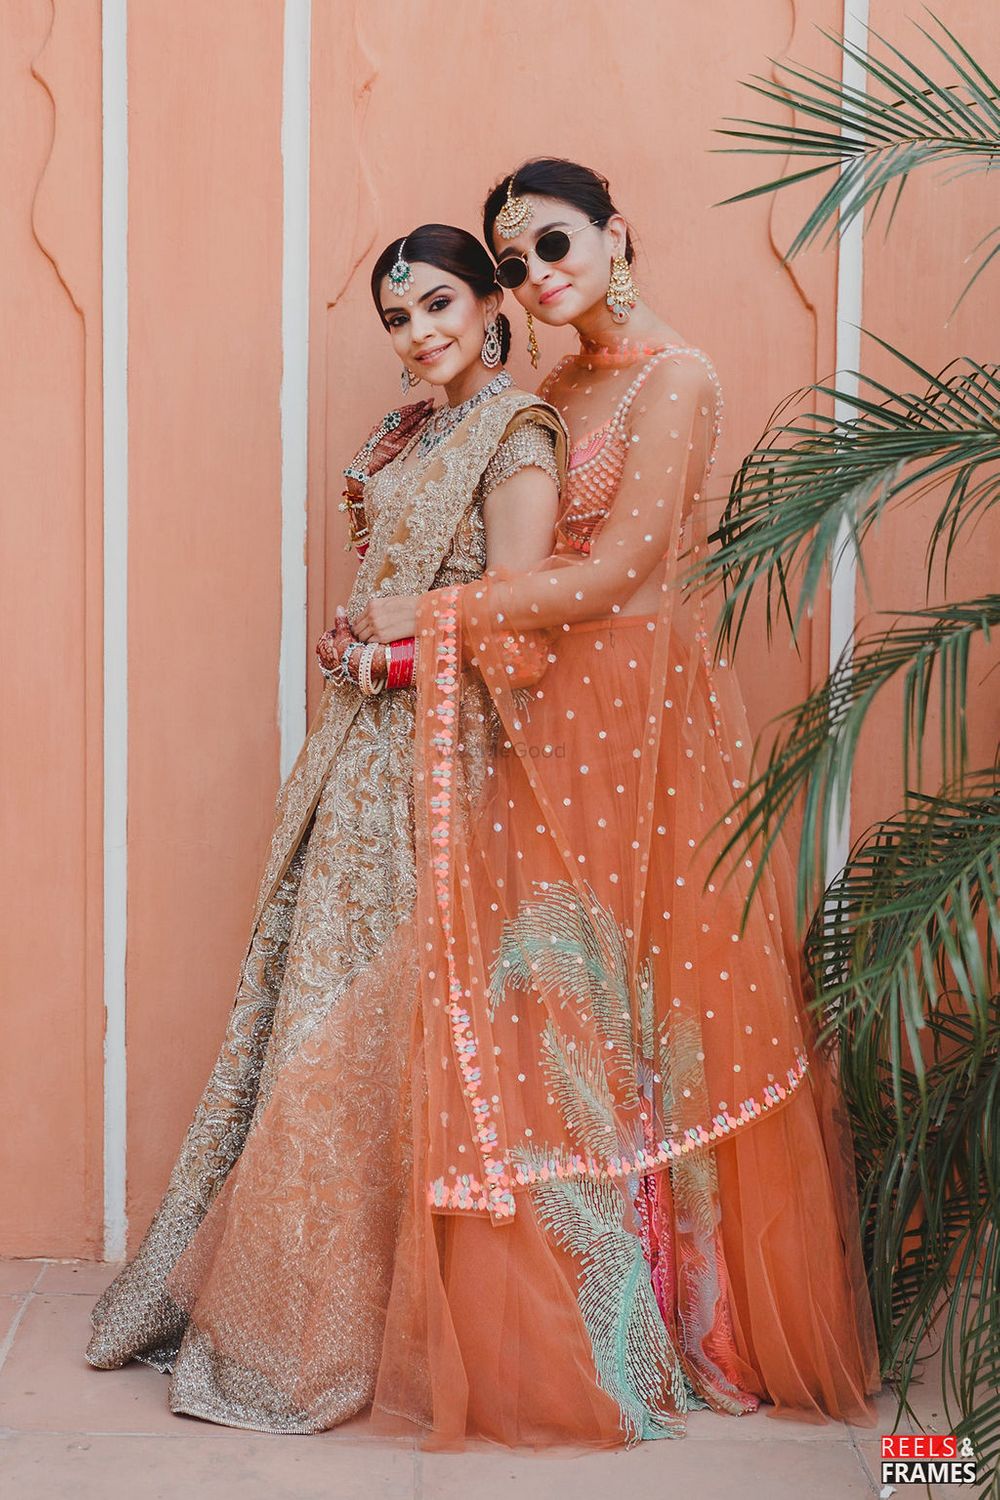 Photo of Alia Bhatt at her best friend's wedding